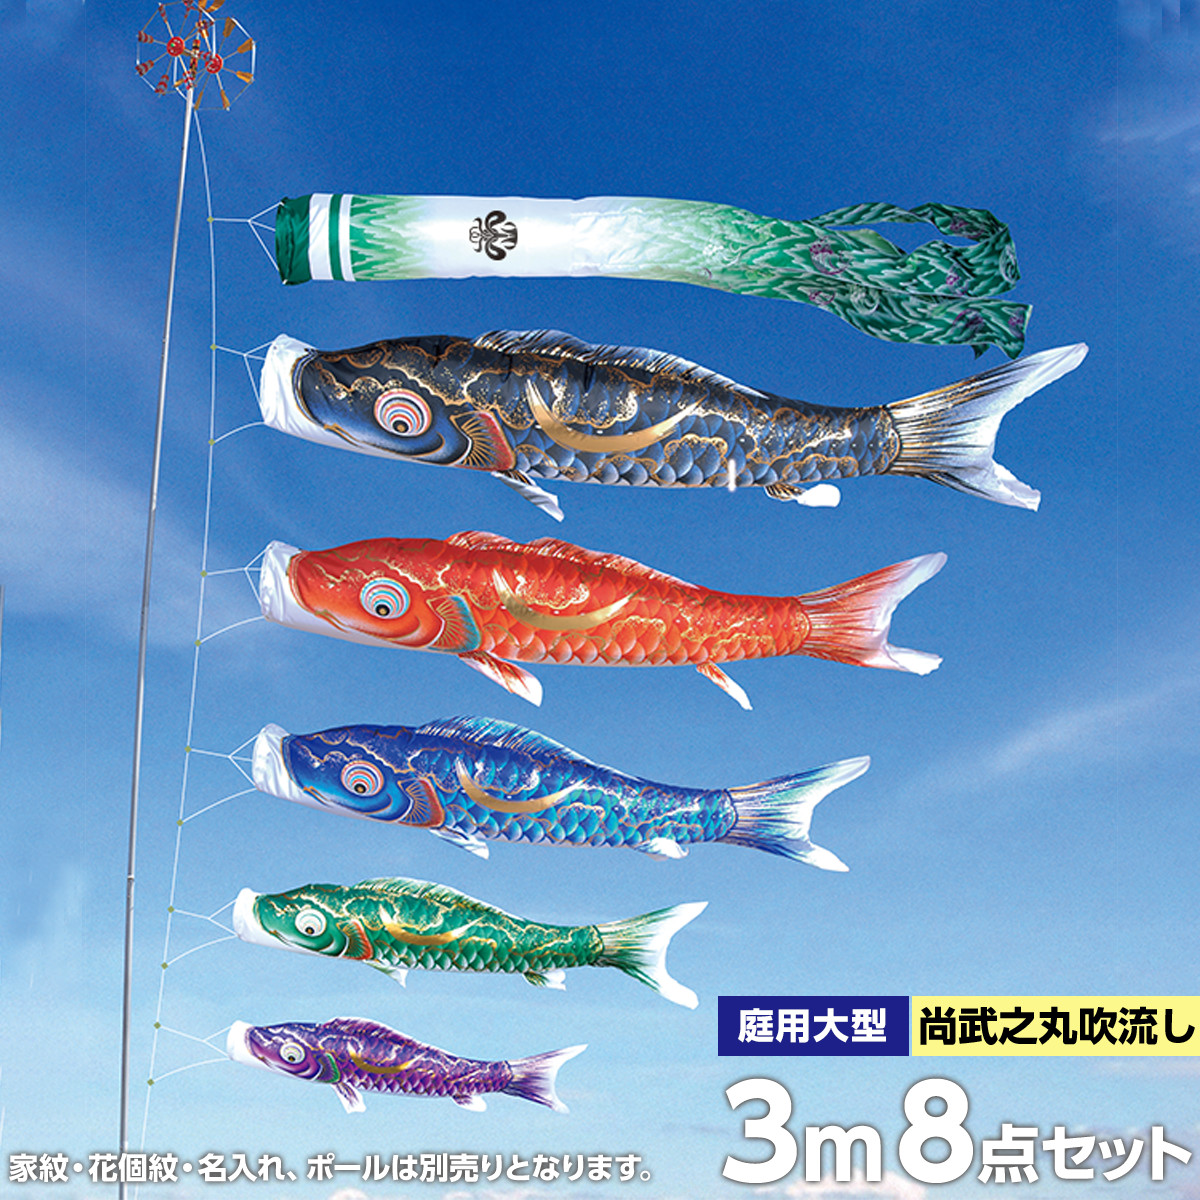 こいのぼり 徳永鯉 鯉のぼり ベランダ用 2m ロイヤルセット 吉兆 慶祝